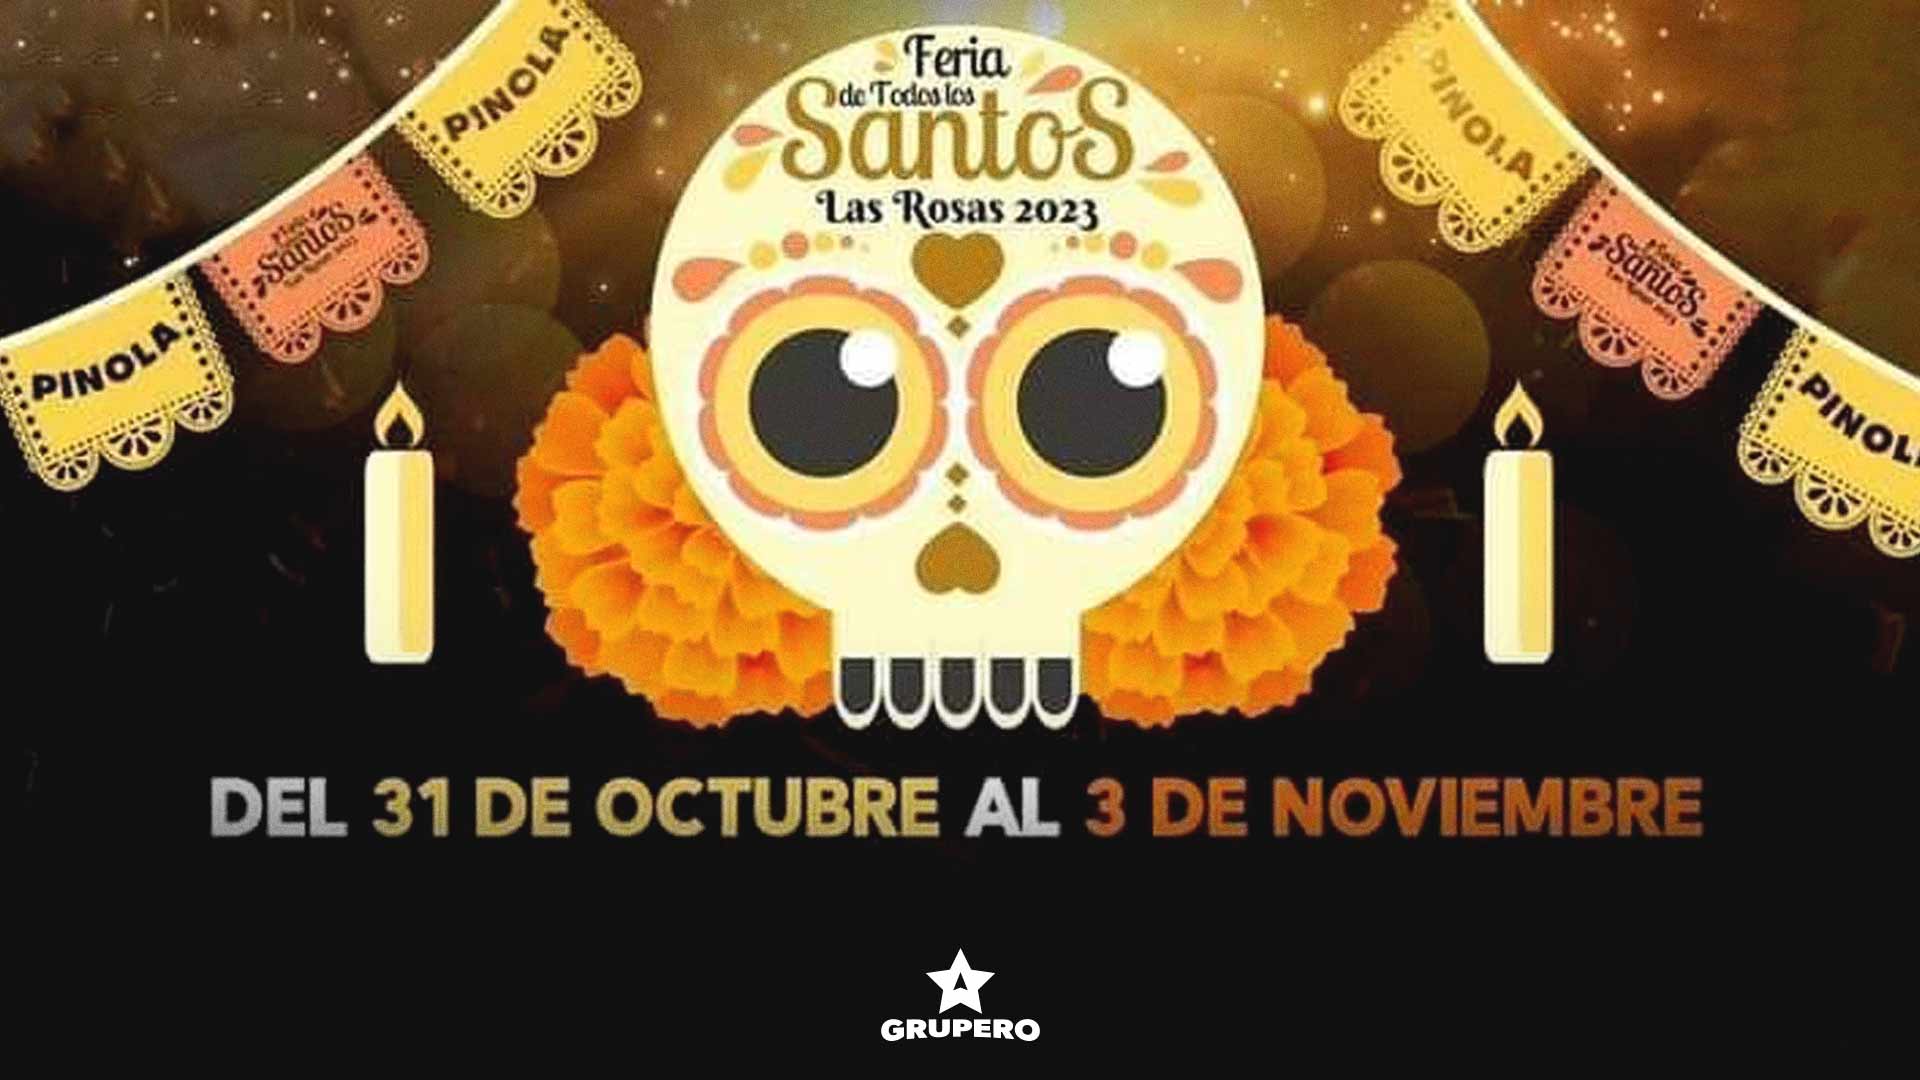 Feria de Todos los Santos Las Rosas 2023